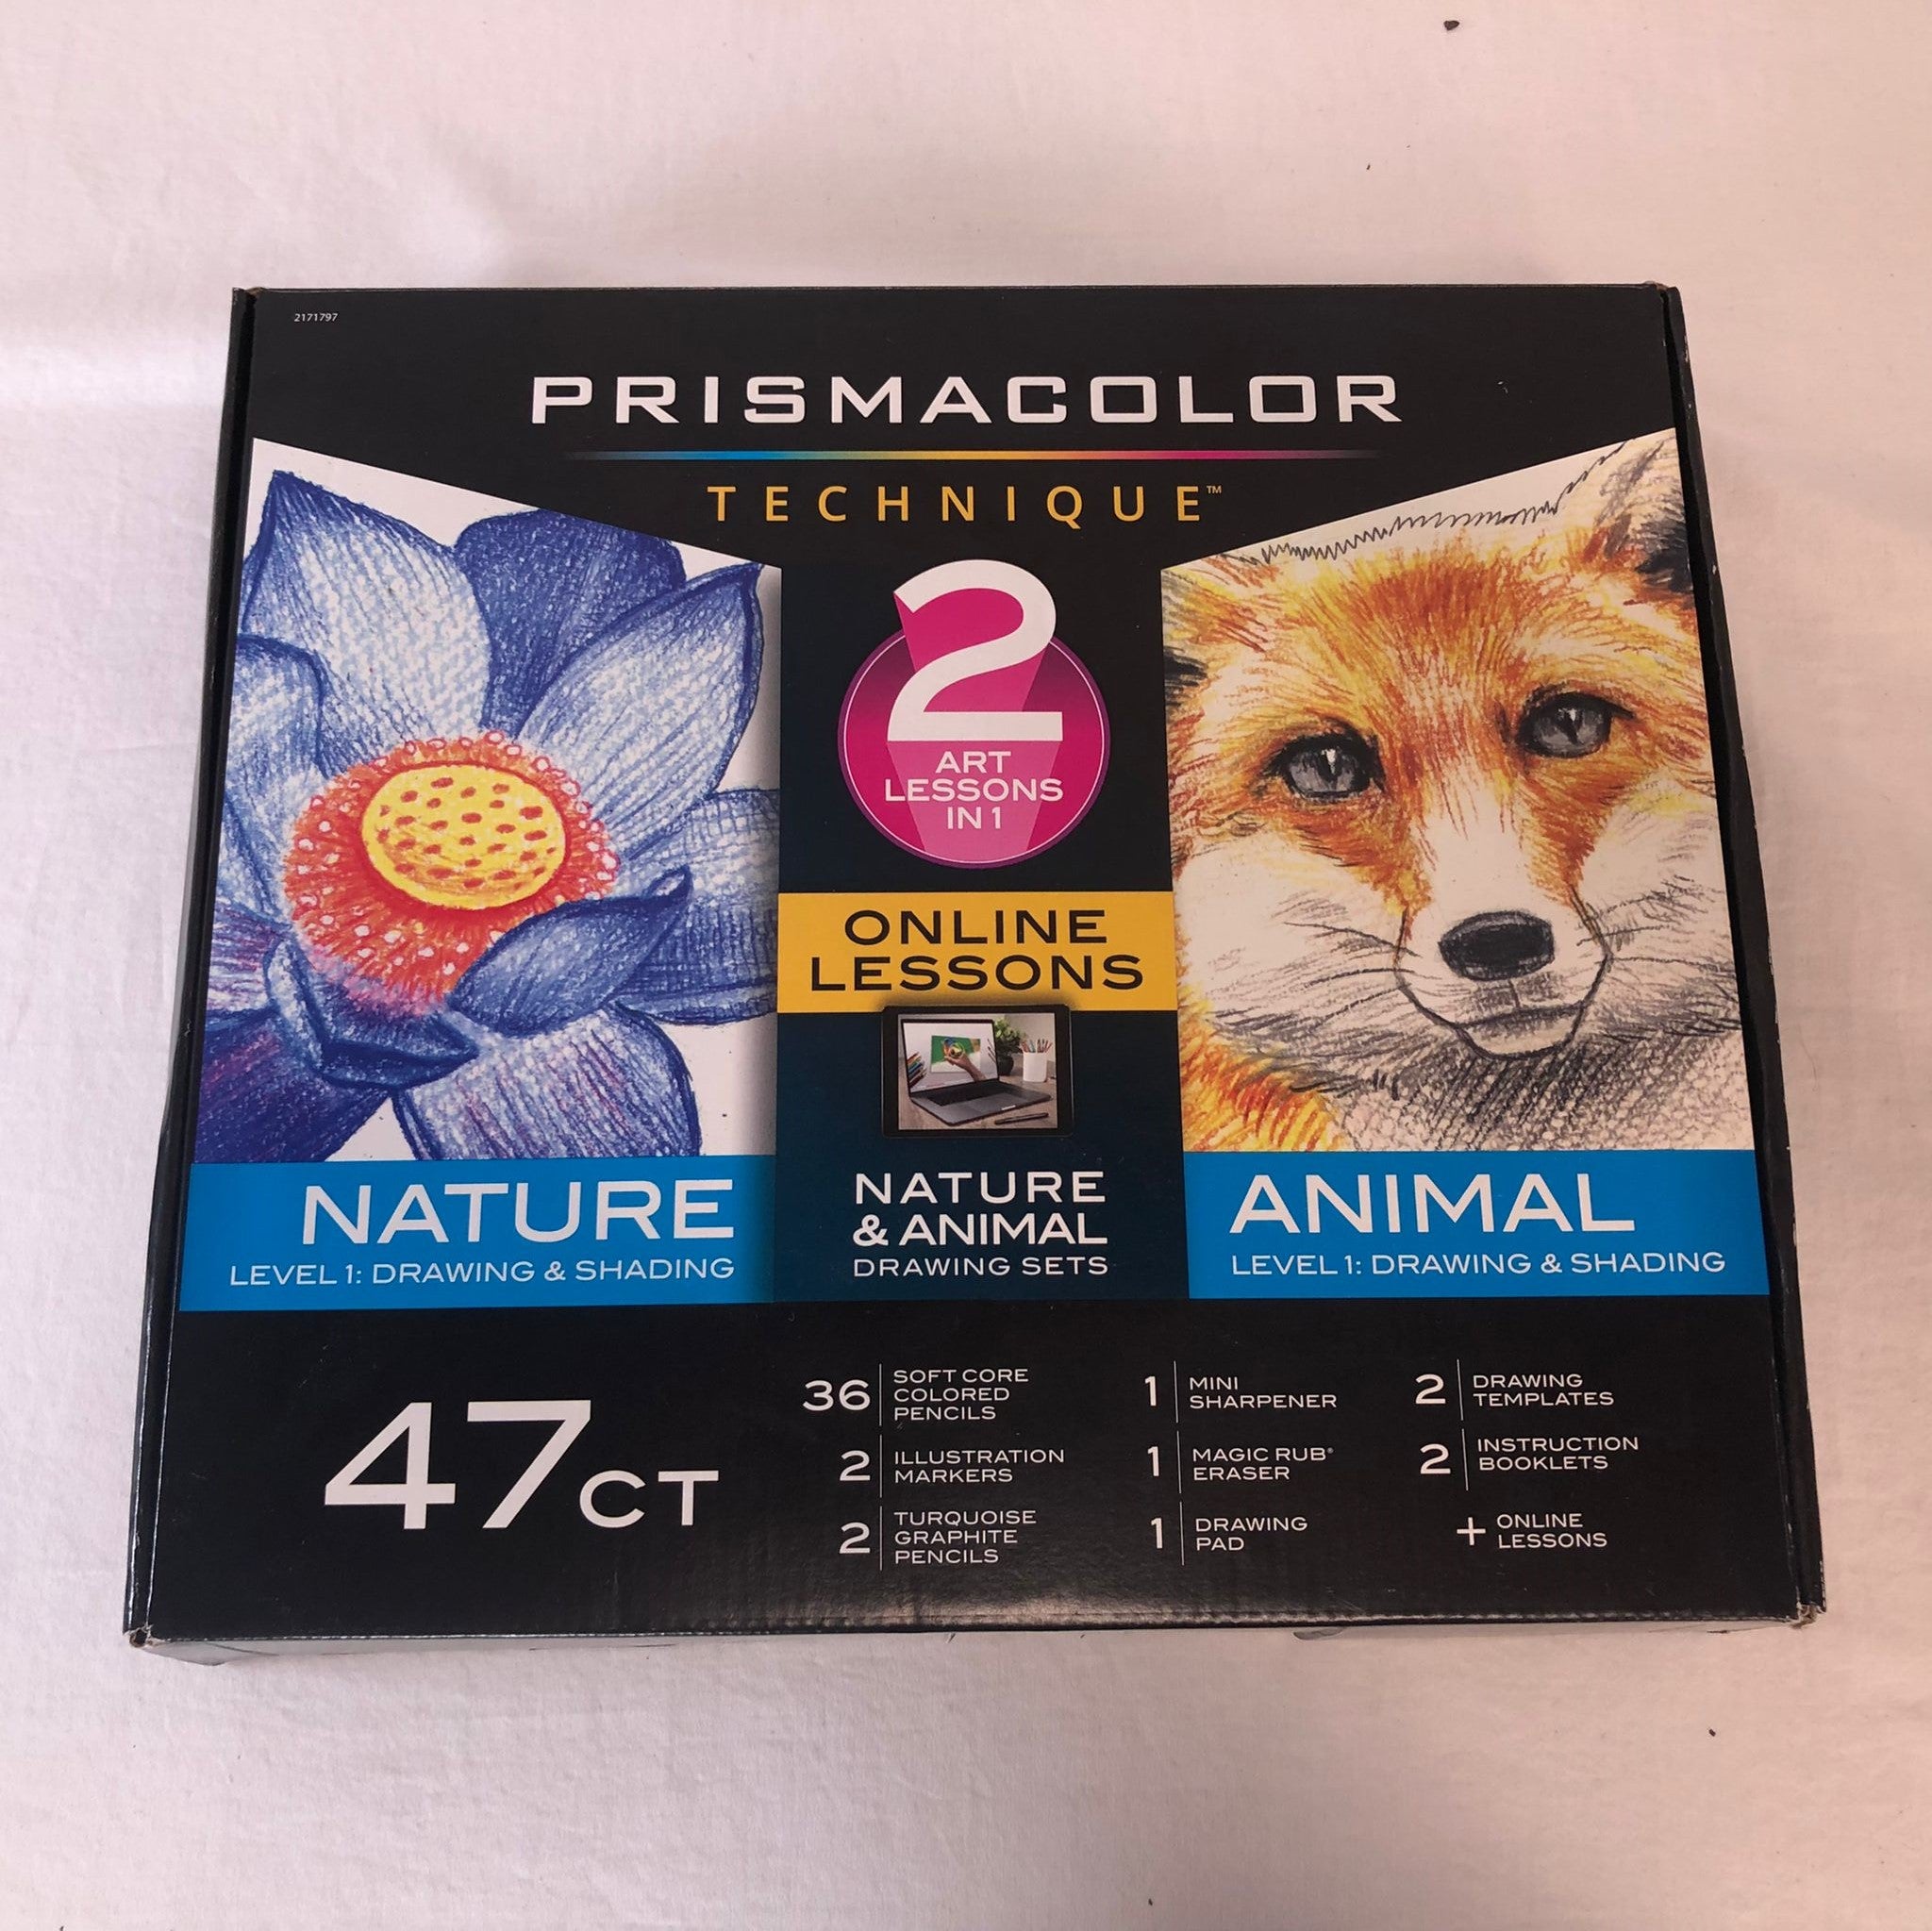 Prismacolor Technique, Art Supplies with Digital Art Lessons, Level 1 Bundle, 47 Count